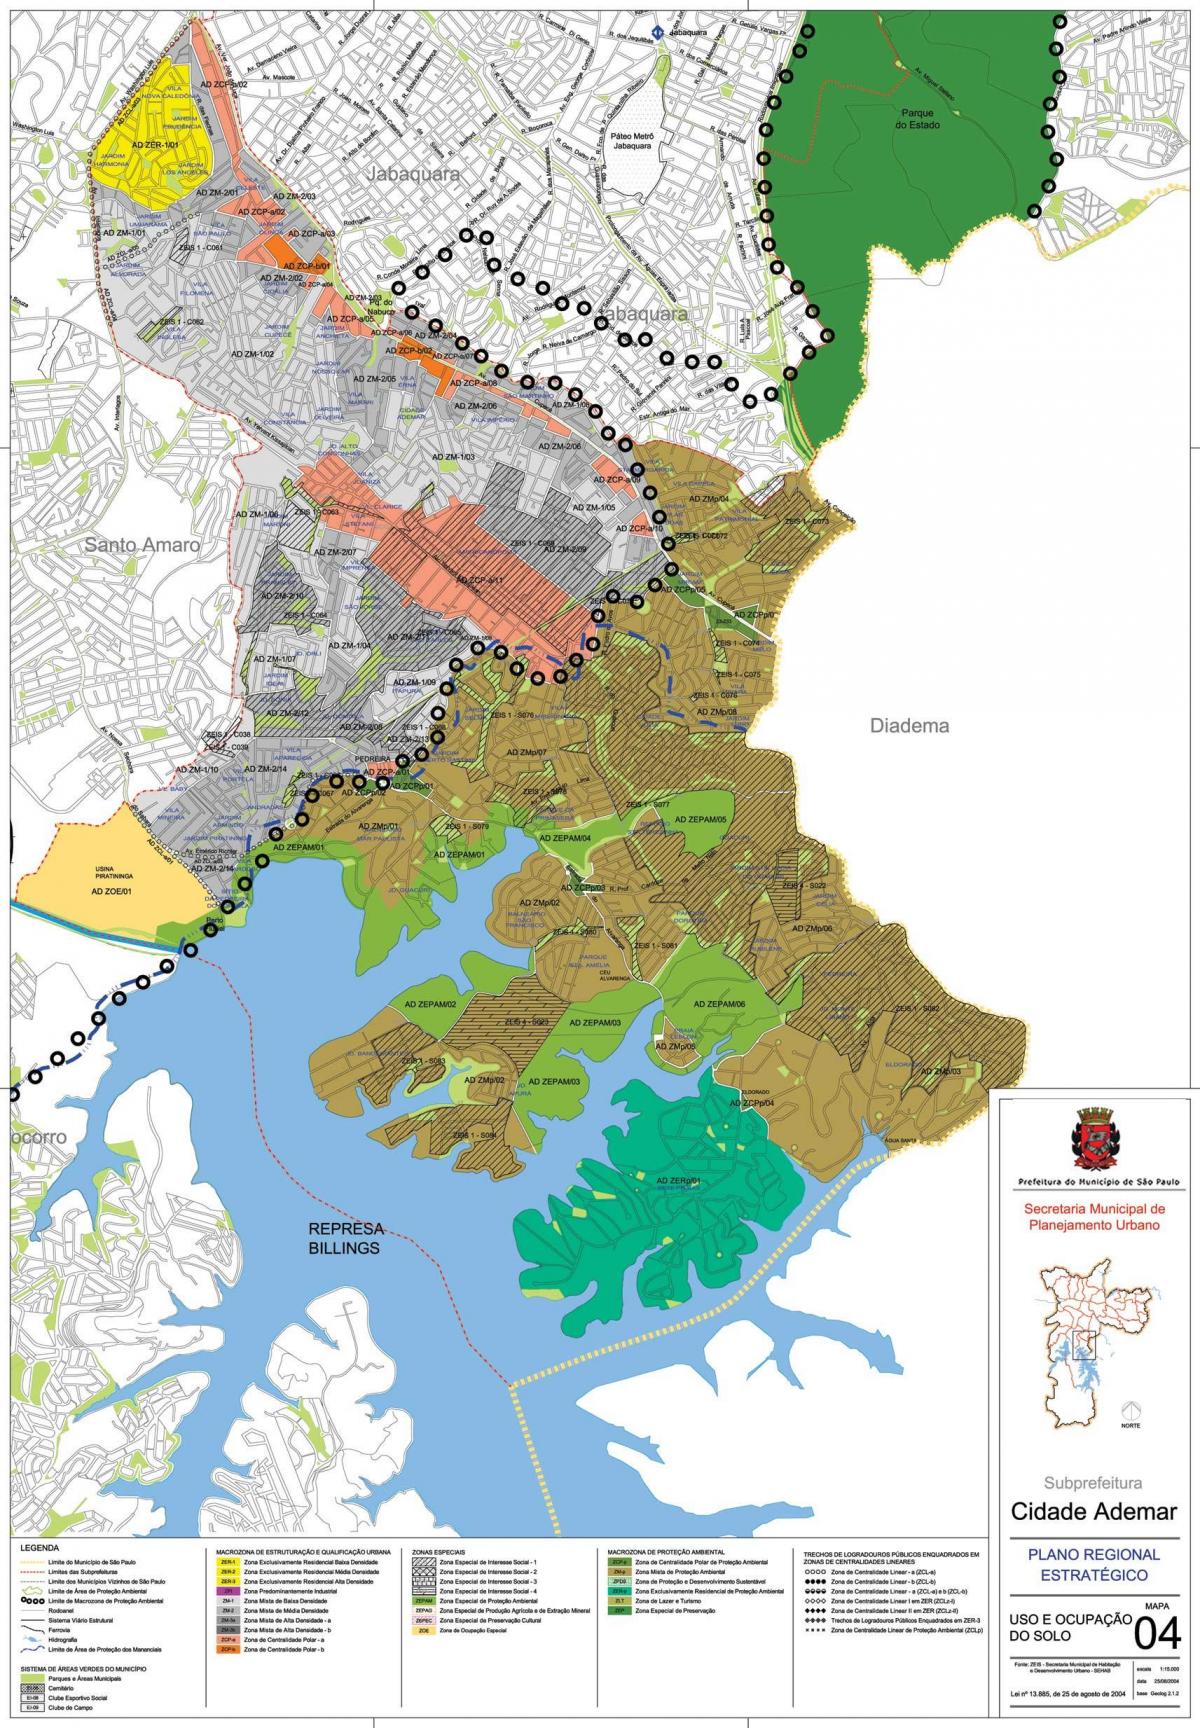 Mapa de la Ciudad Ademar São Paulo - la Ocupación de la tierra